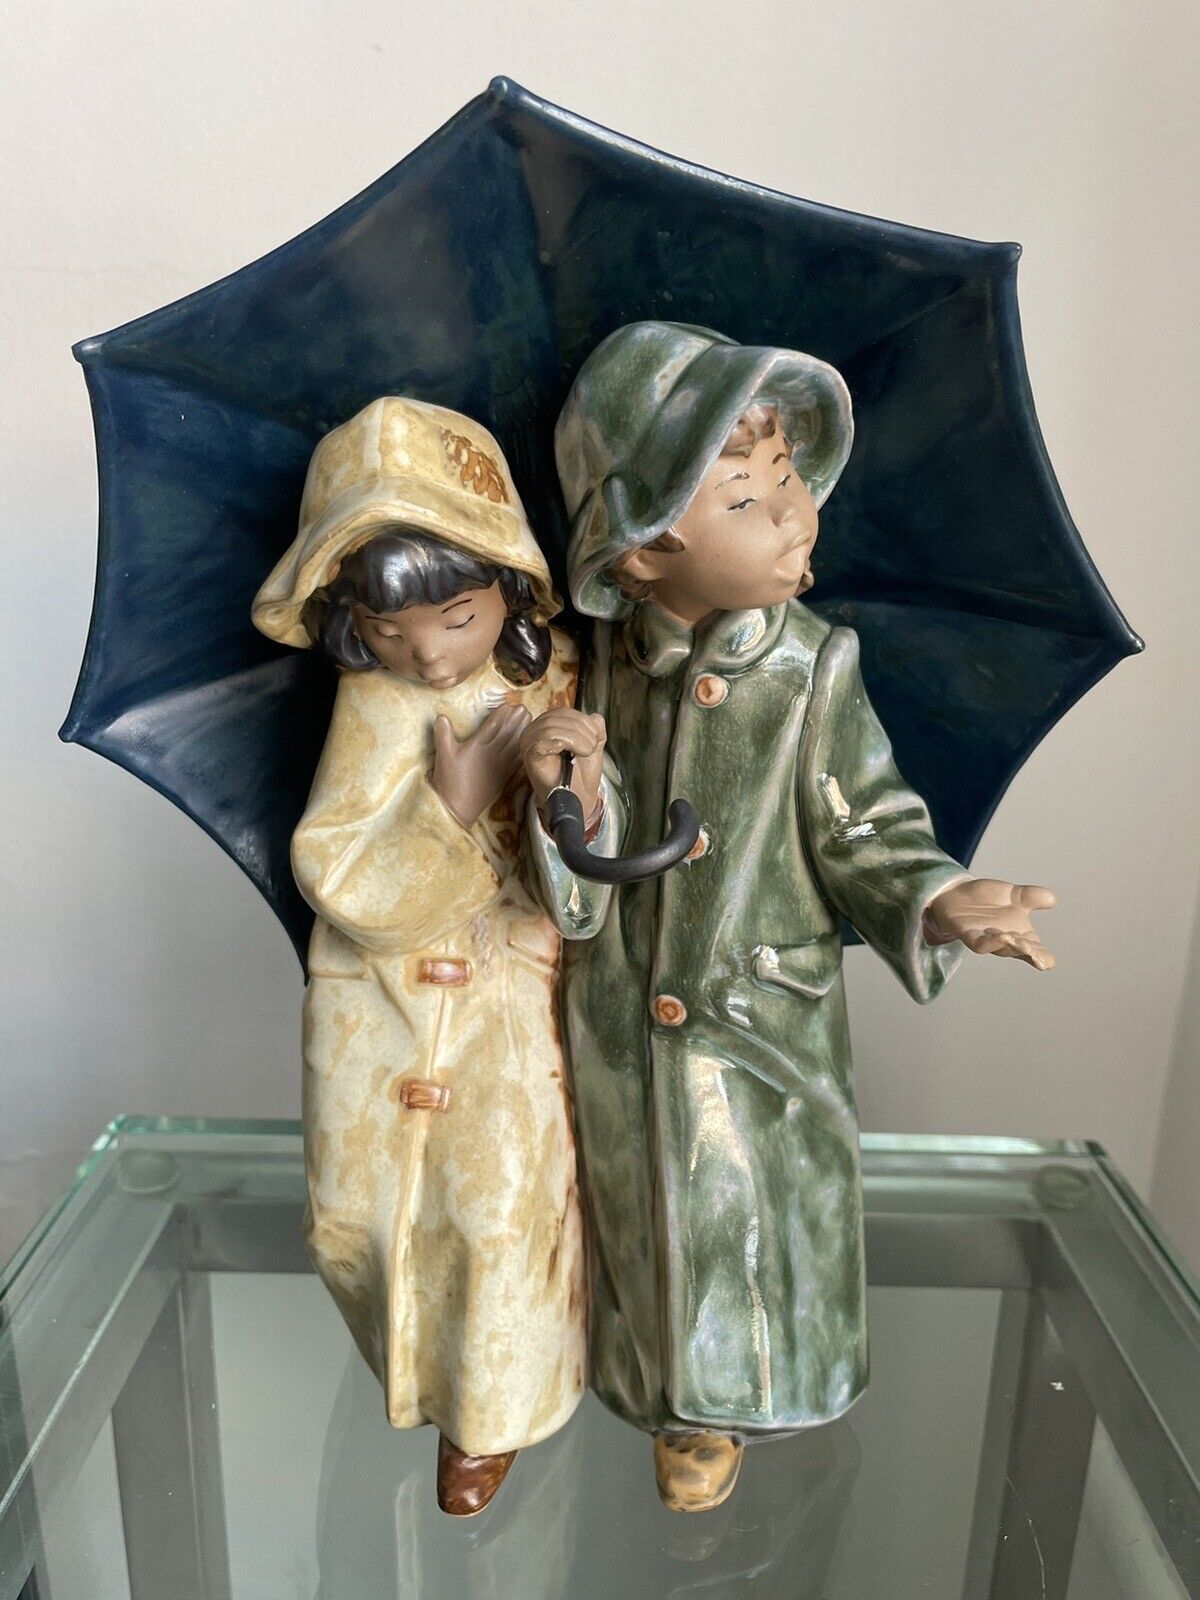 Lladro Collectible Figurine “Under The Rain”. Rare Figurine